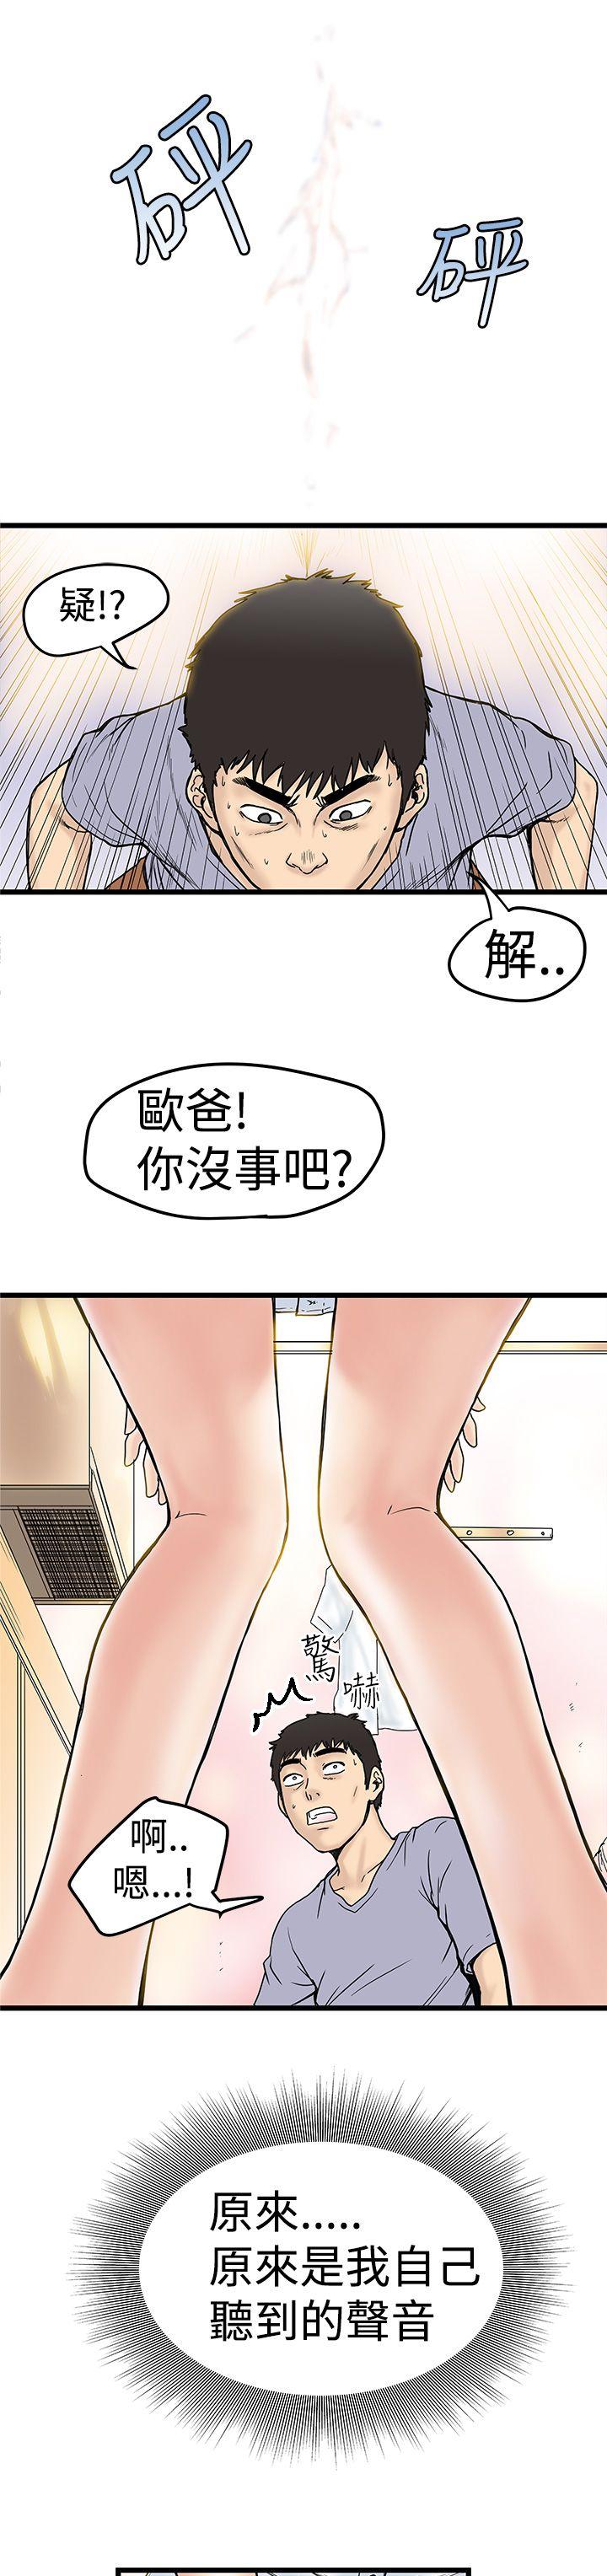 韩国污漫画 想像狂熱(完結) 第2话 9